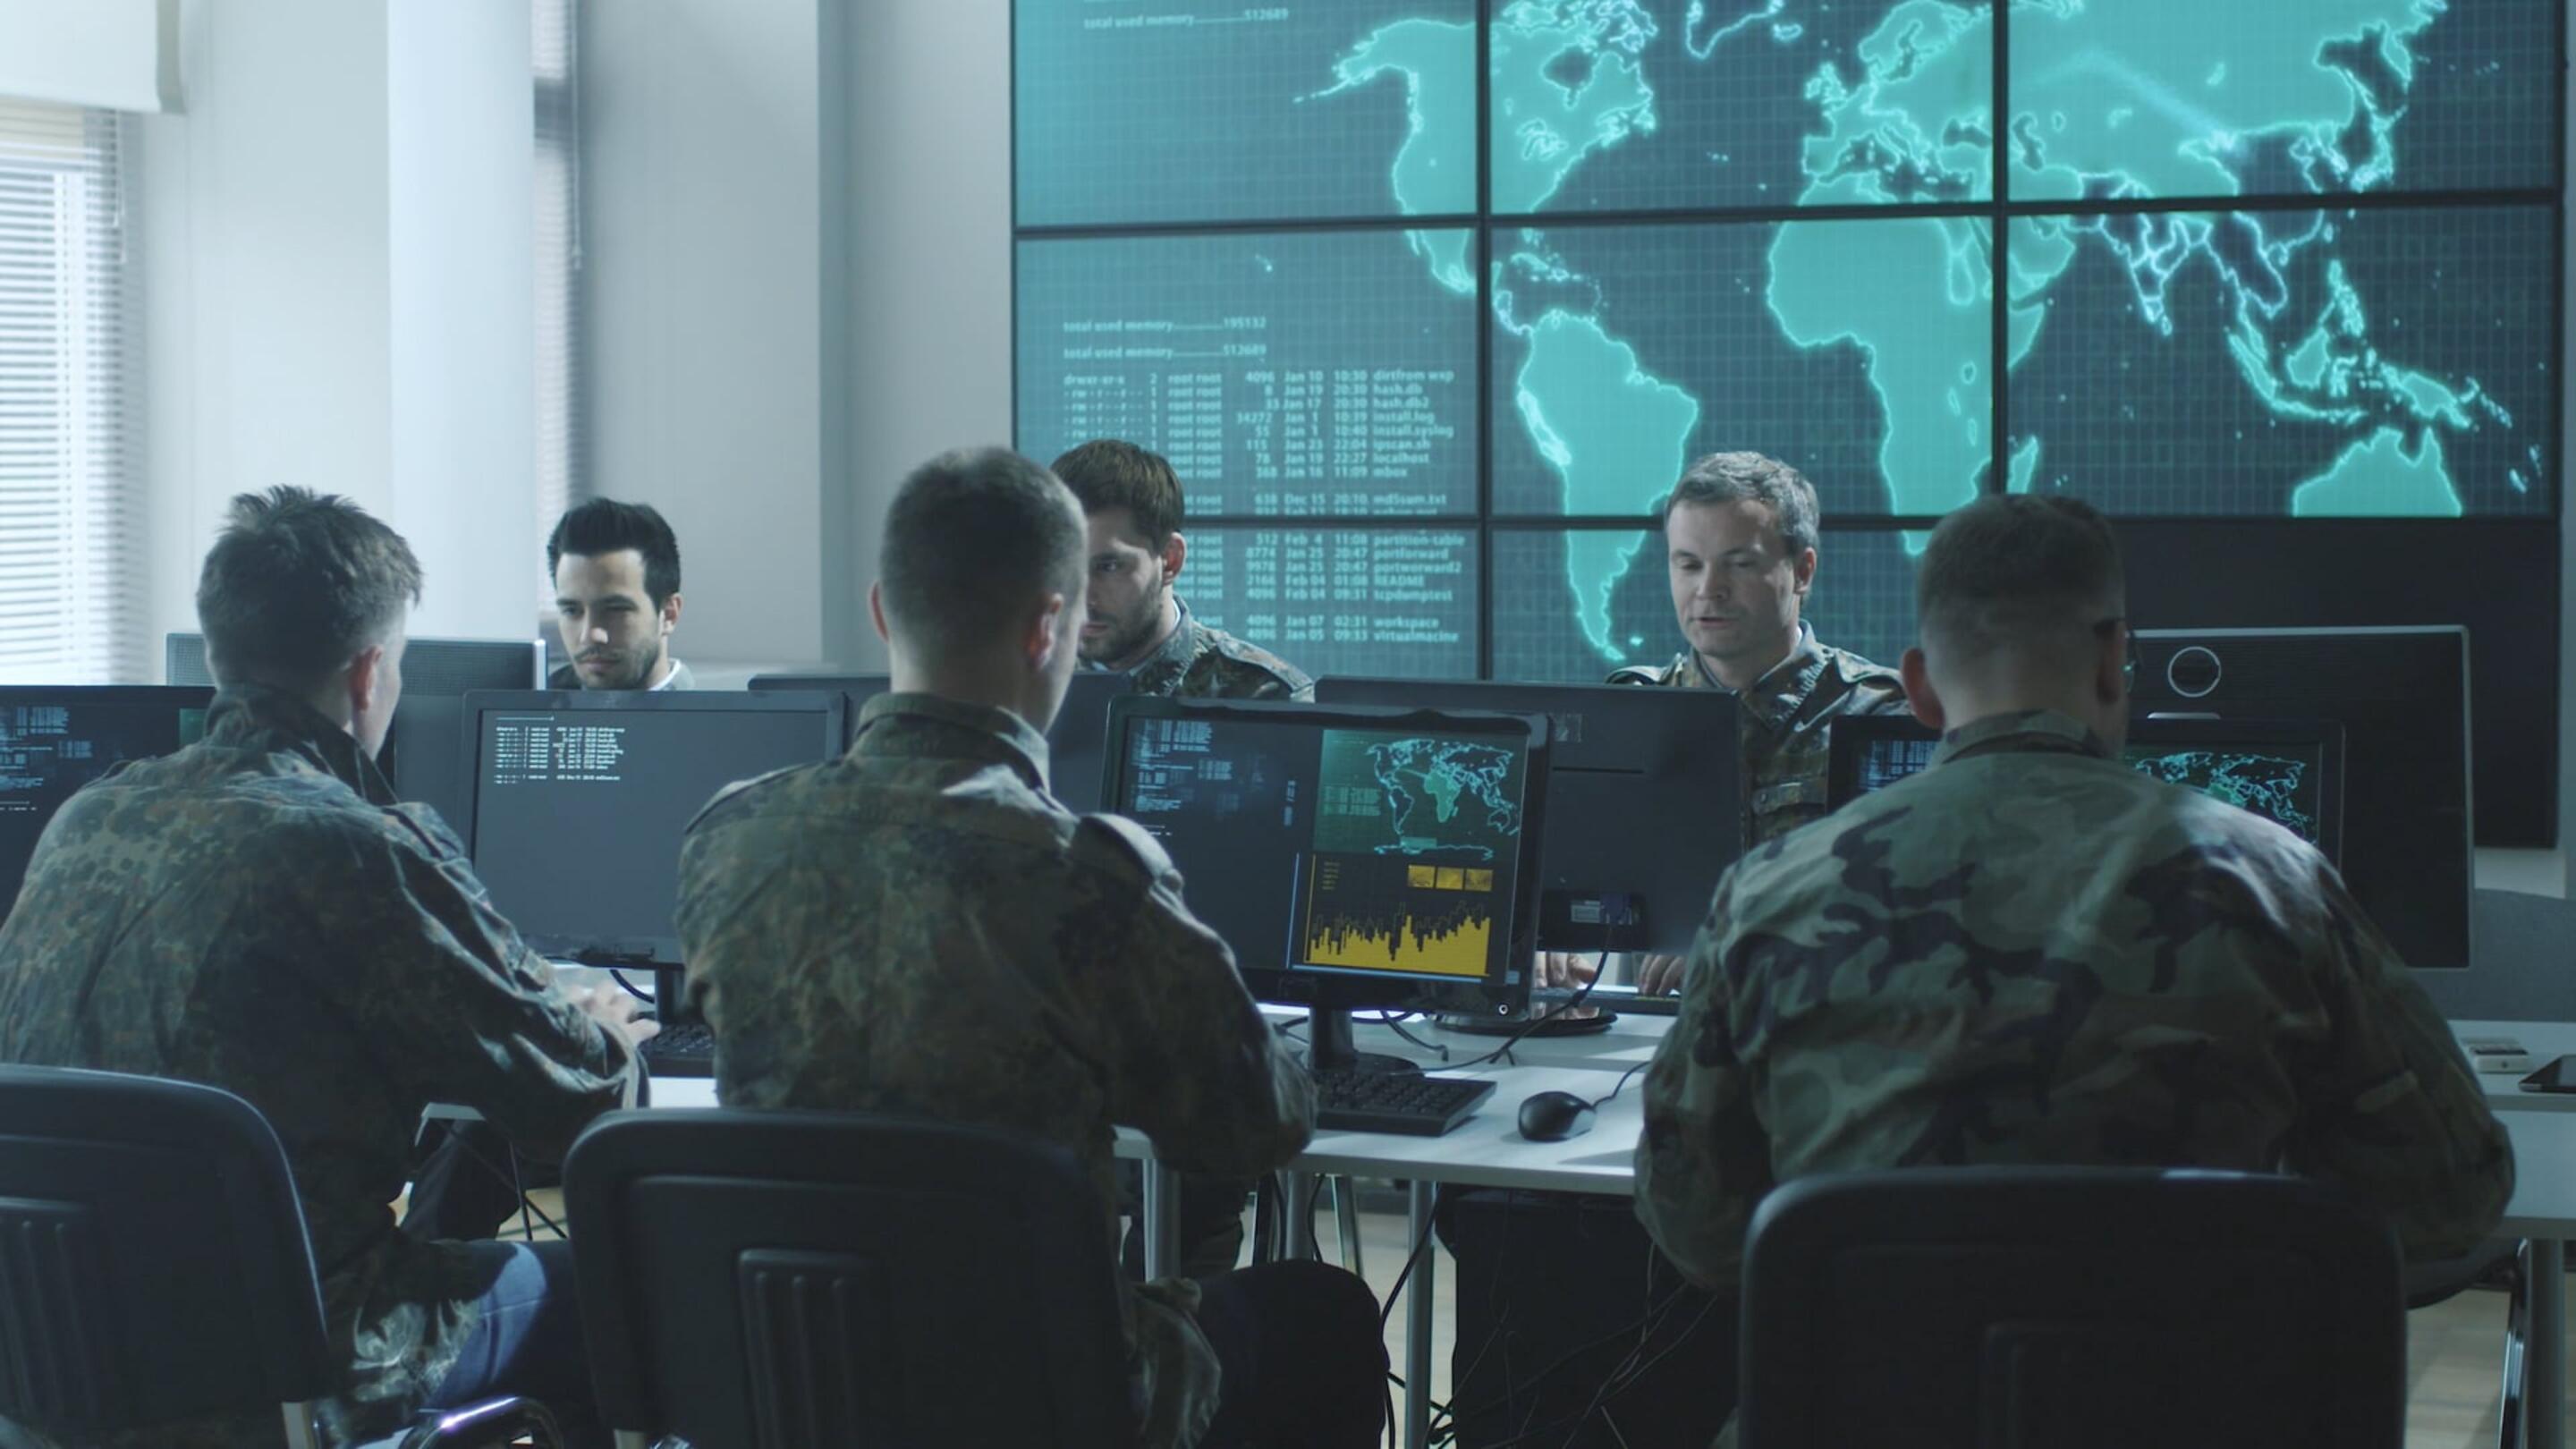 Tempest - Tempest grupa mężczyzn w mundurach wojskowych siedzących przy komputerach